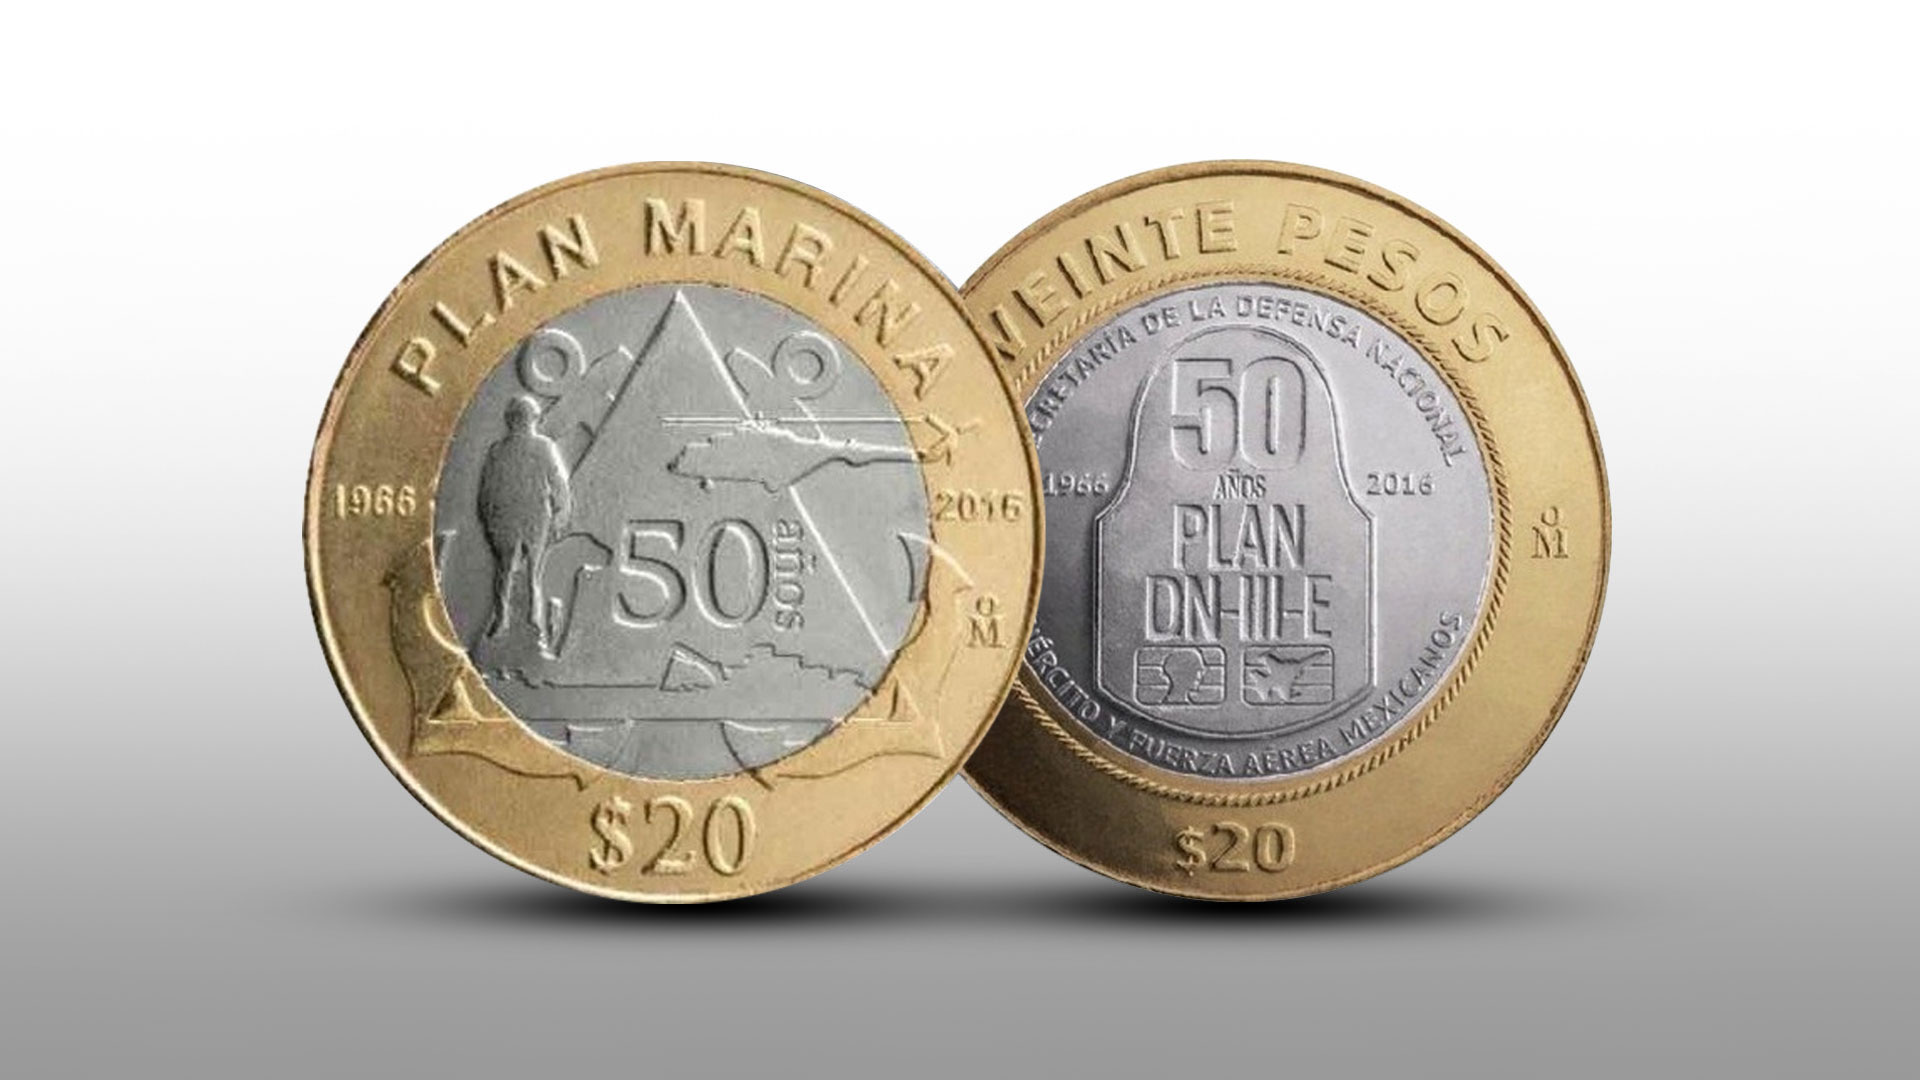 Dos inusuales monedas vuelven a ofrecerse a precios elevados en unos meses: superan los 30,000 pesos en línea